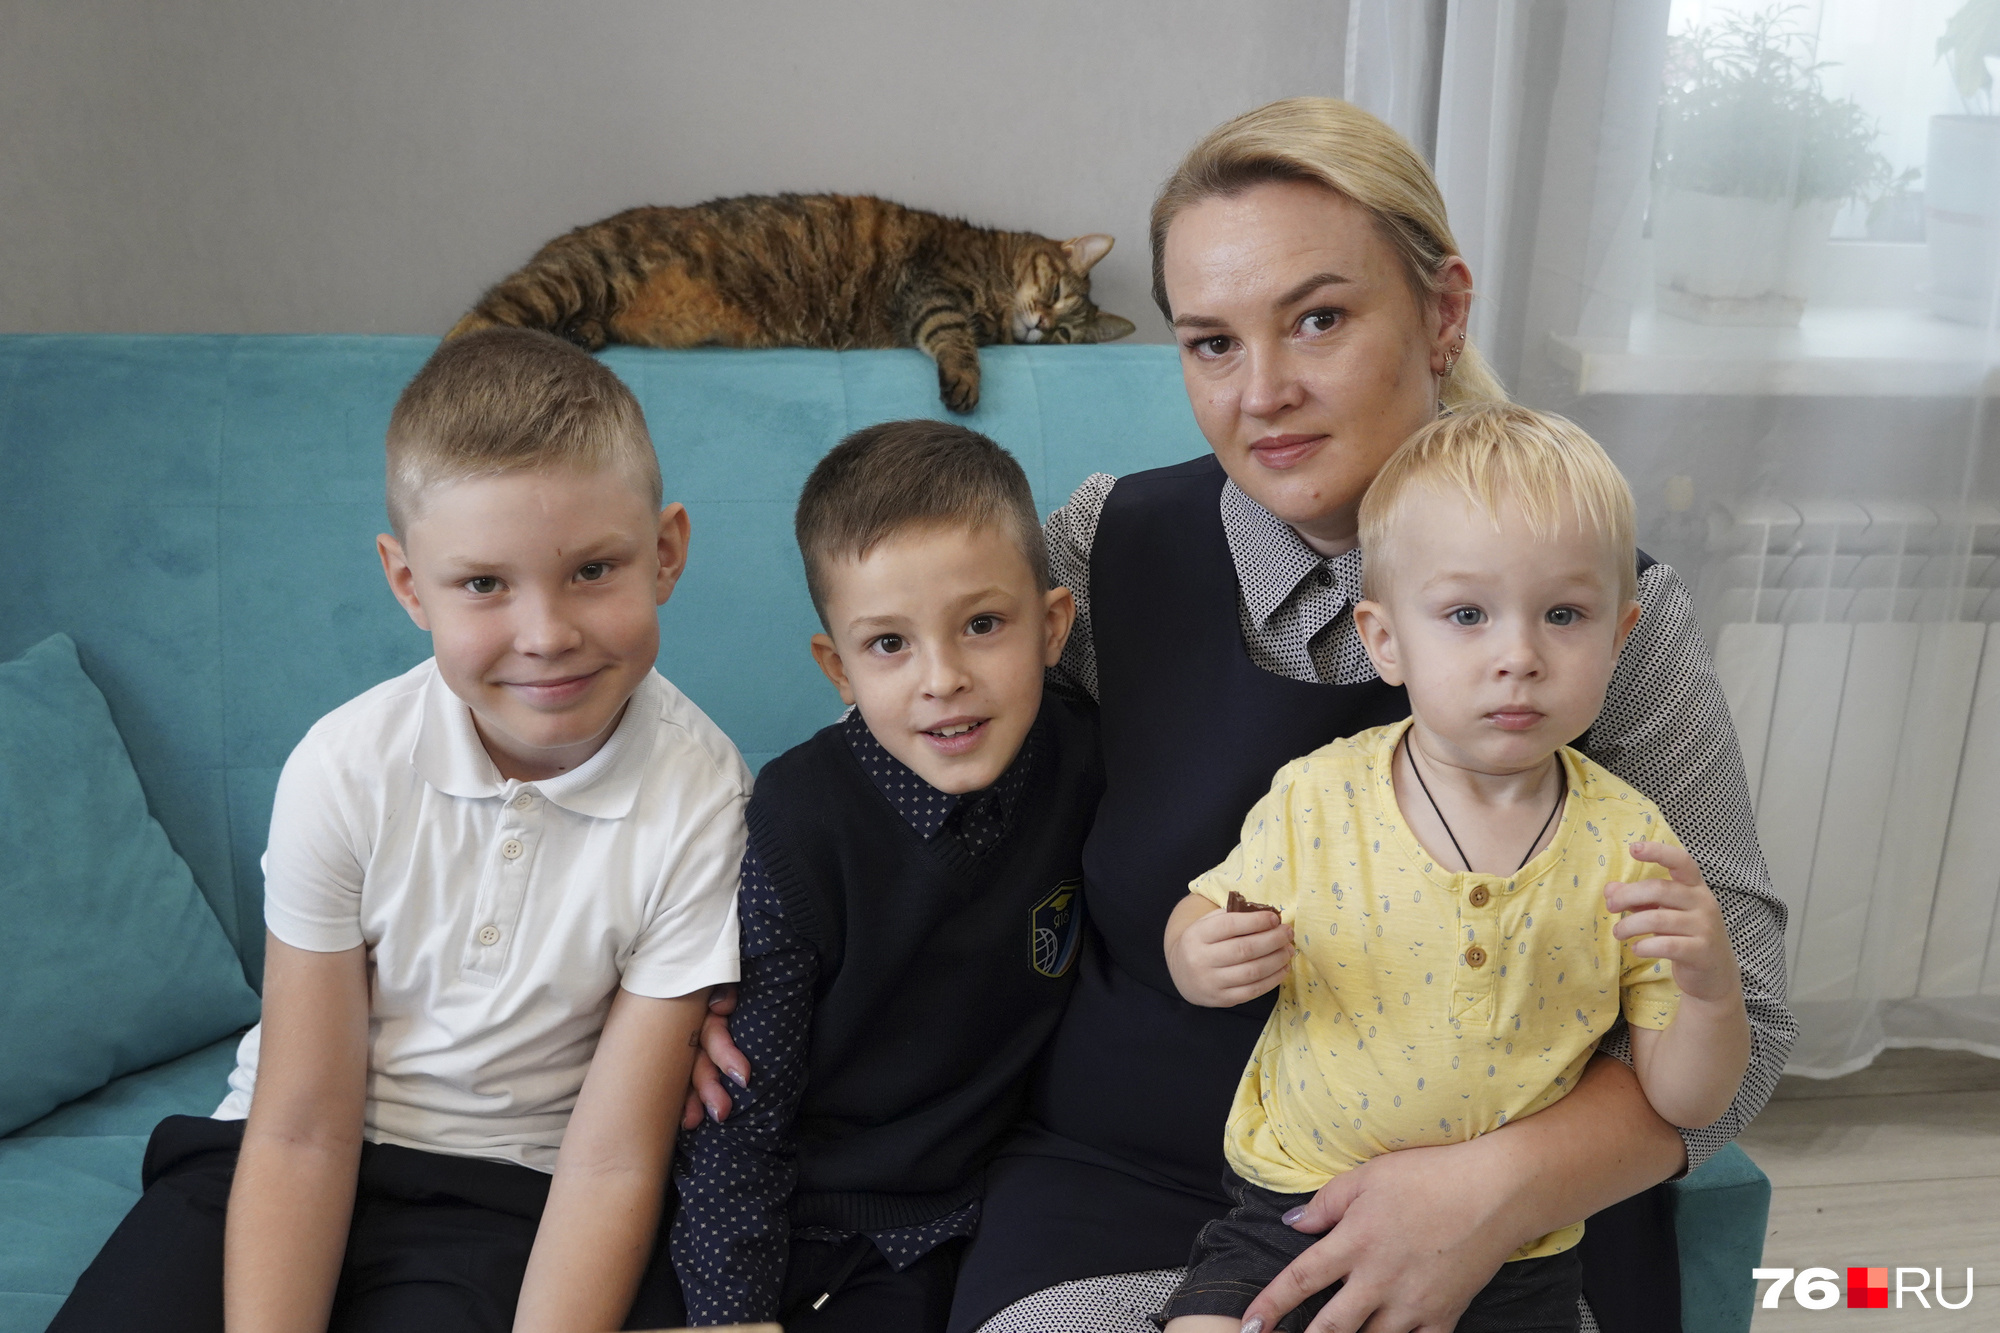 Слева направо: <nobr class="_">9-летний</nobr> Богдан, <nobr class="_">8-летний</nobr> Егор и <nobr class="_">2-летний</nobr> Илья. А сзади — кошка Ириска